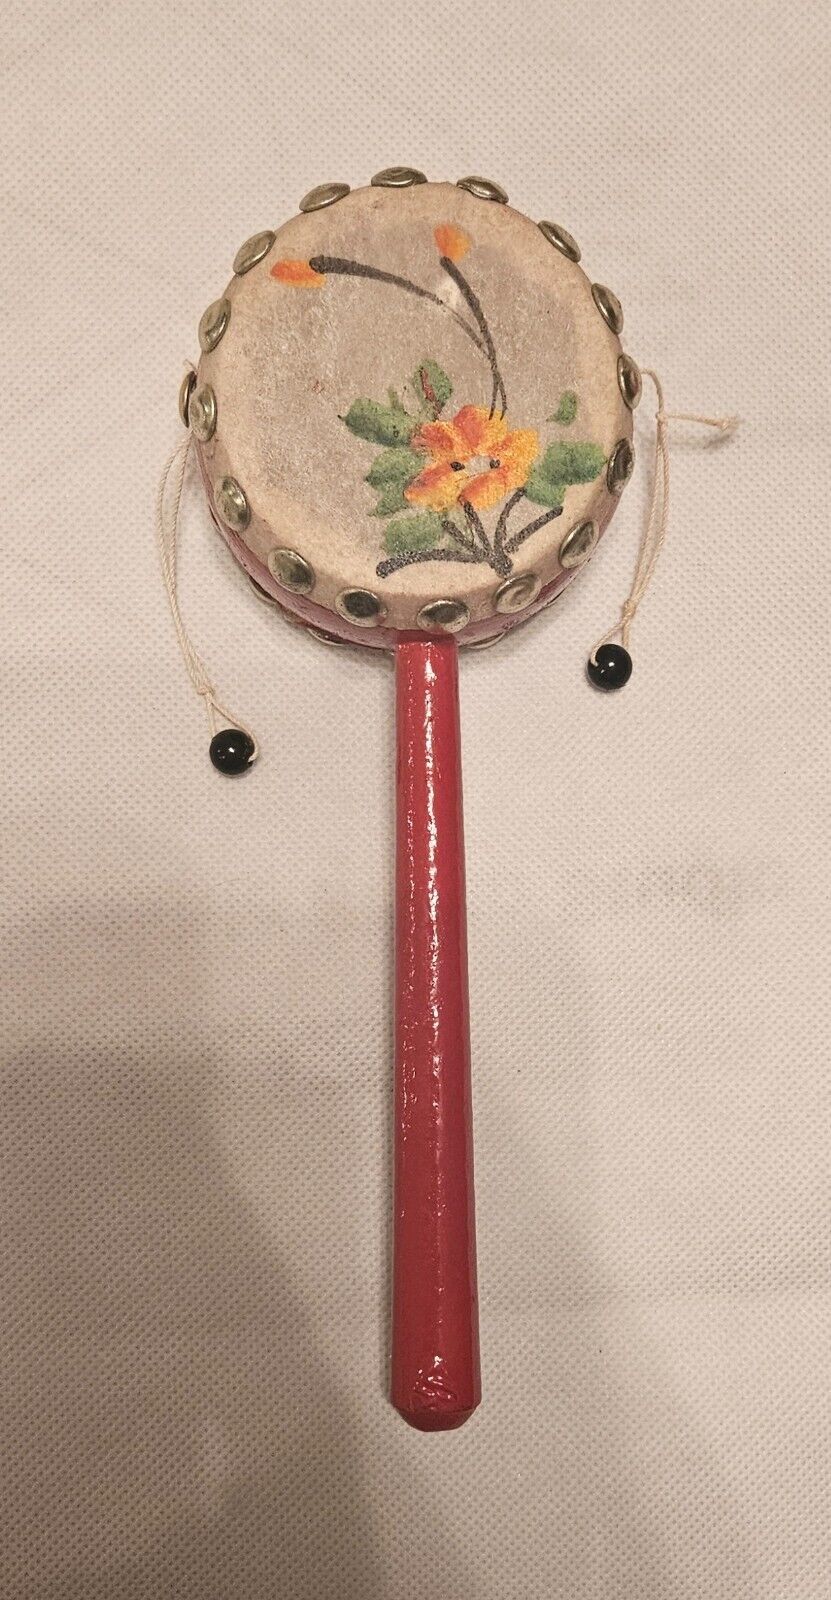 Den-Den Daiko Pellet Drum Wood Beads PAINTED FLOWER RED WOOD JAPANESE Vintage